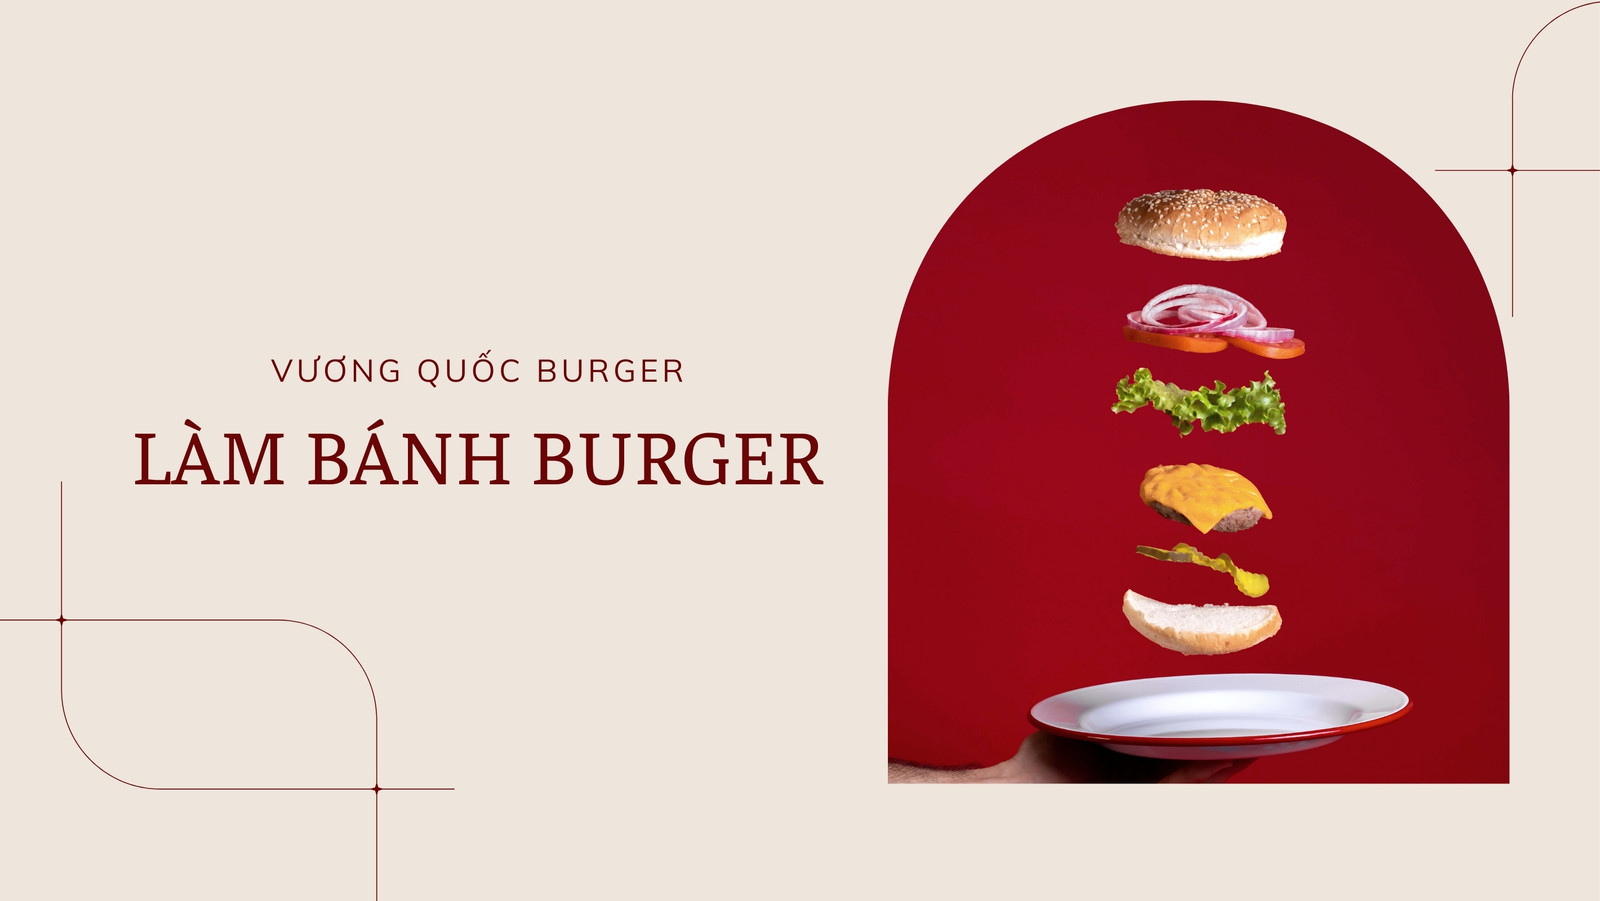 Bạn là một tín đồ của burger và Canva miễn phí là công cụ hoàn hảo để thiết kế ảnh của riêng bạn. Hãy cùng tận hưởng những chiếc burger ngon miệng và tạo ra những hình ảnh độc đáo với Canva miễn phí.